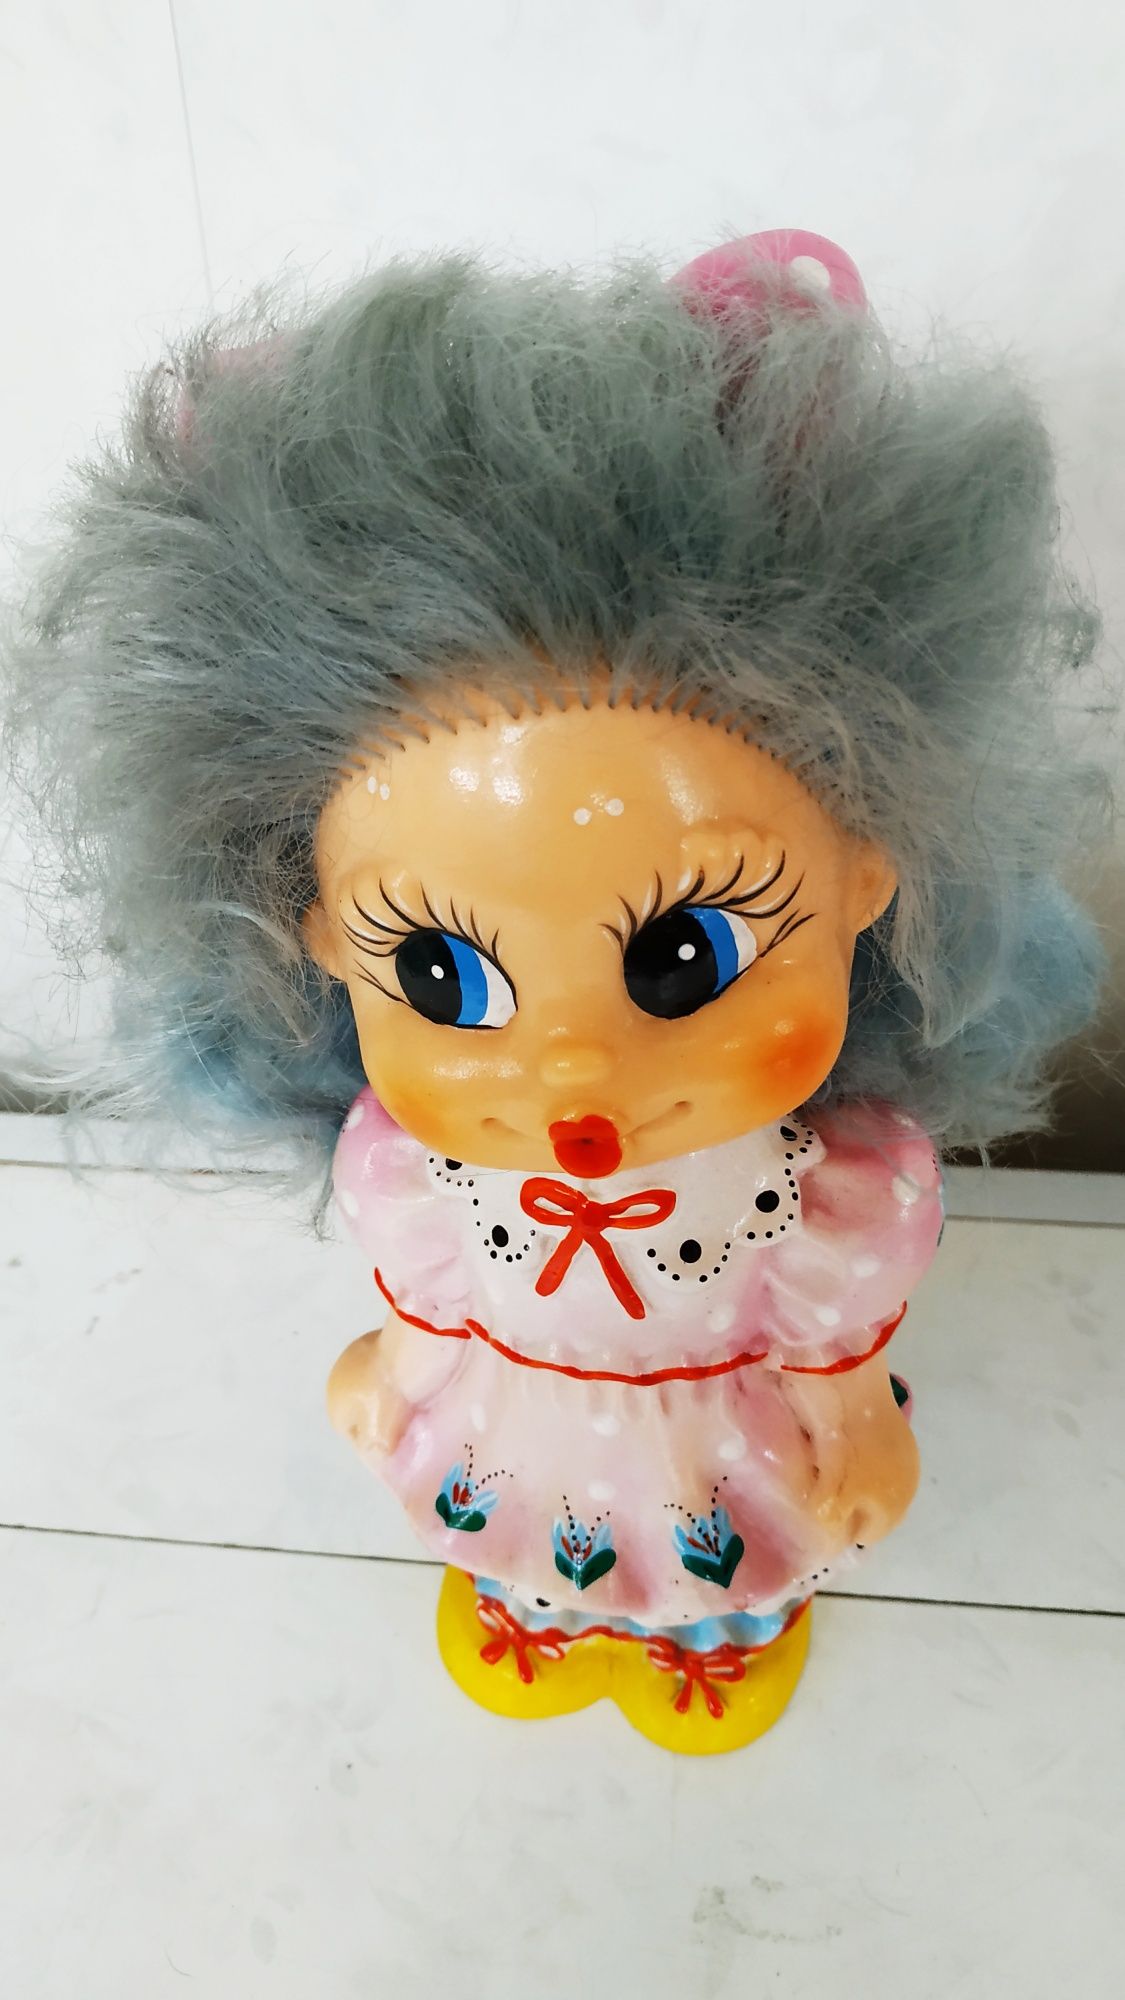 25 см. в идеале резиновая кукла (игрушка из СССР)